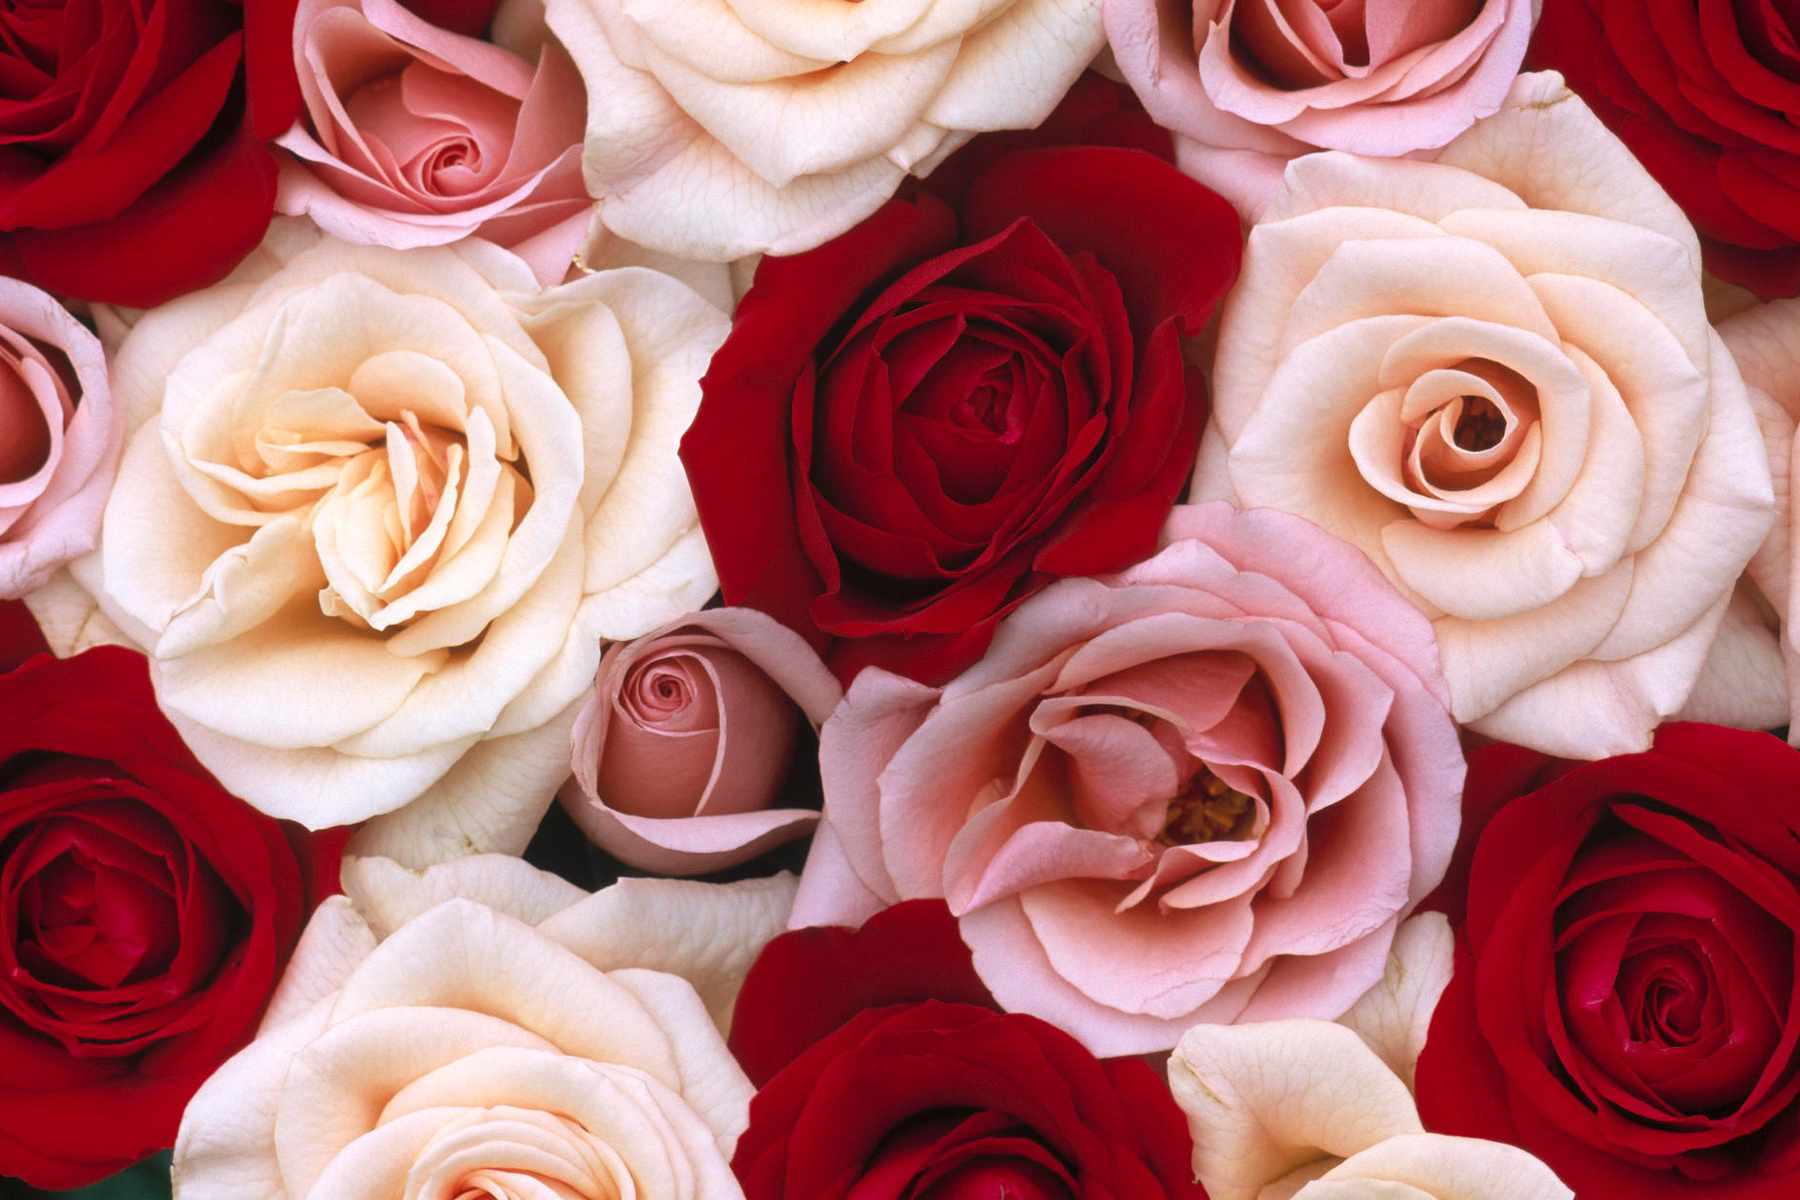 Hoa hồng đỏ và hồng là biểu tượng của tình yêu và sự nồng nhiệt. Hãy đón xem hình nền hoa hồng đỏ và hồng để tận hưởng sự đẹp đẽ và quyến rũ của chúng. Hãy để tình yêu tràn đầy màn hình điện thoại của bạn!